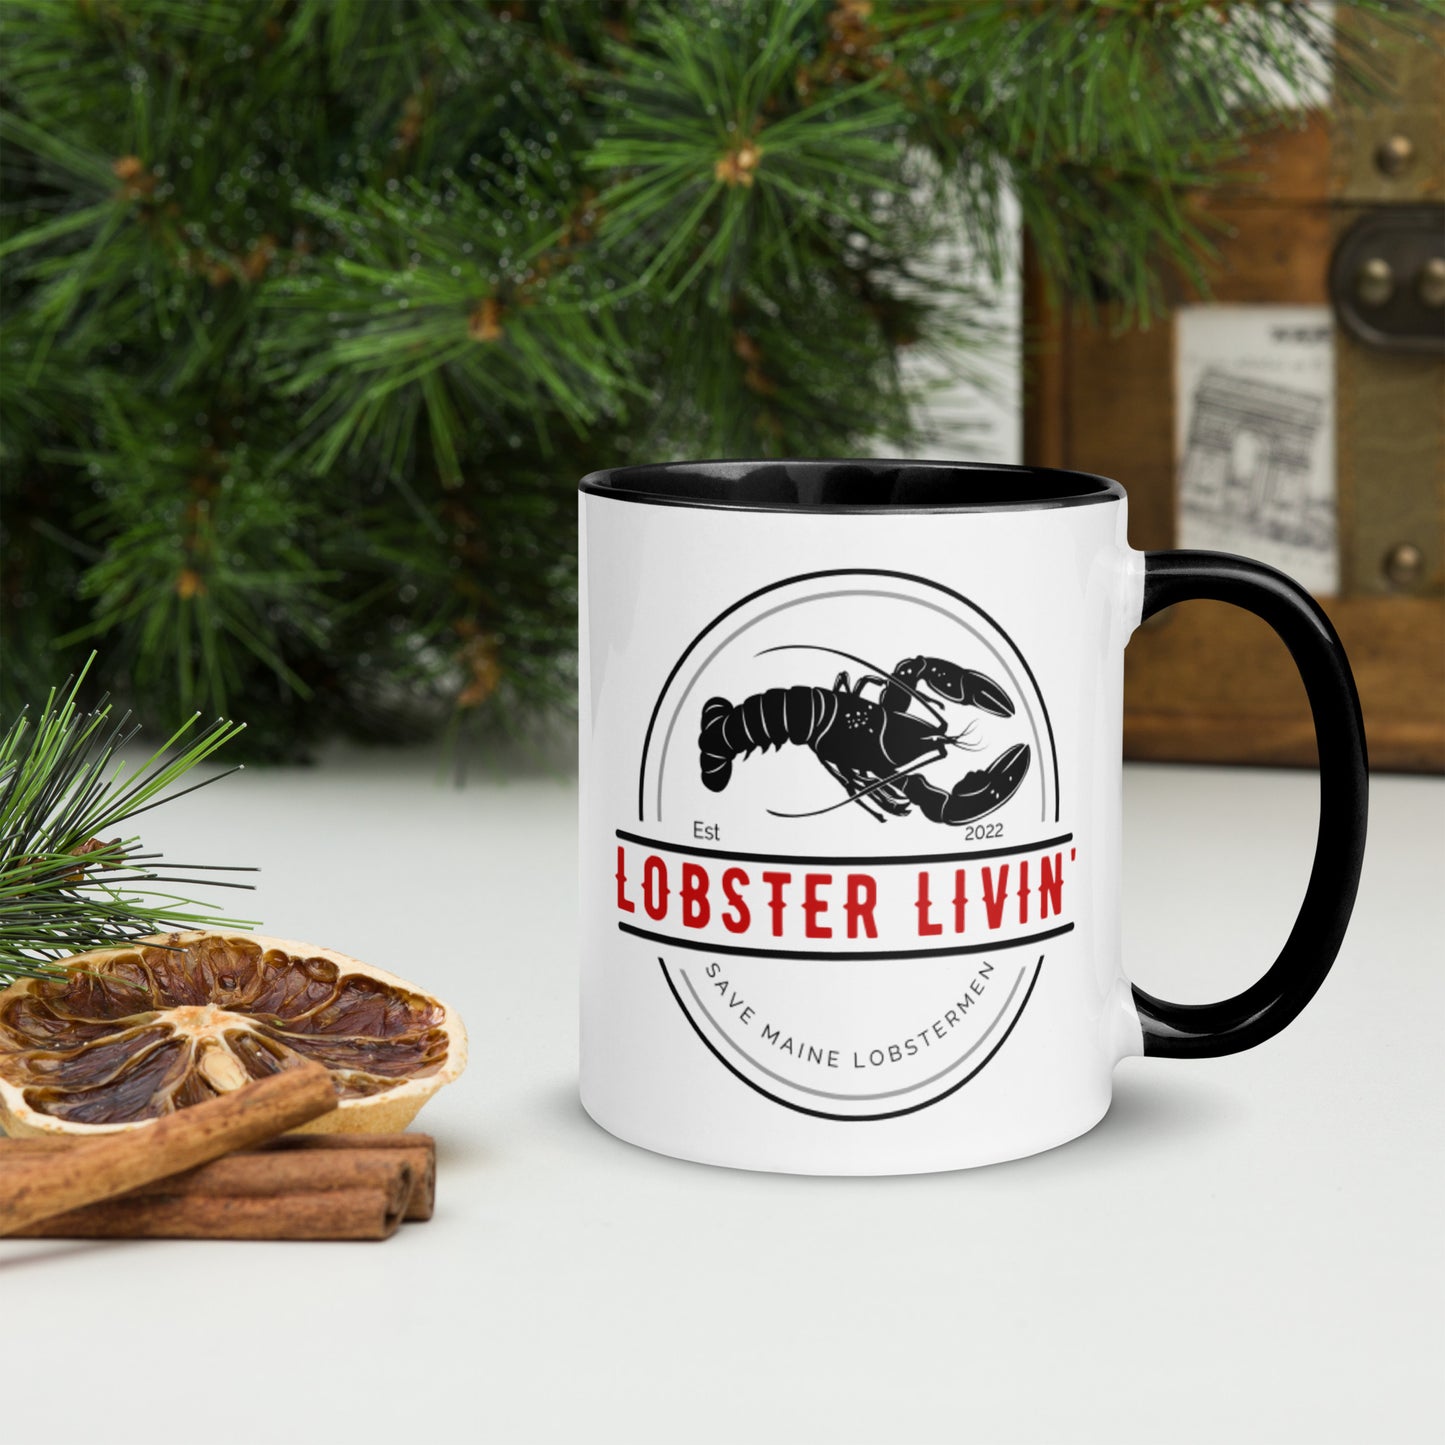 Lobster Livin' Coffee Mug